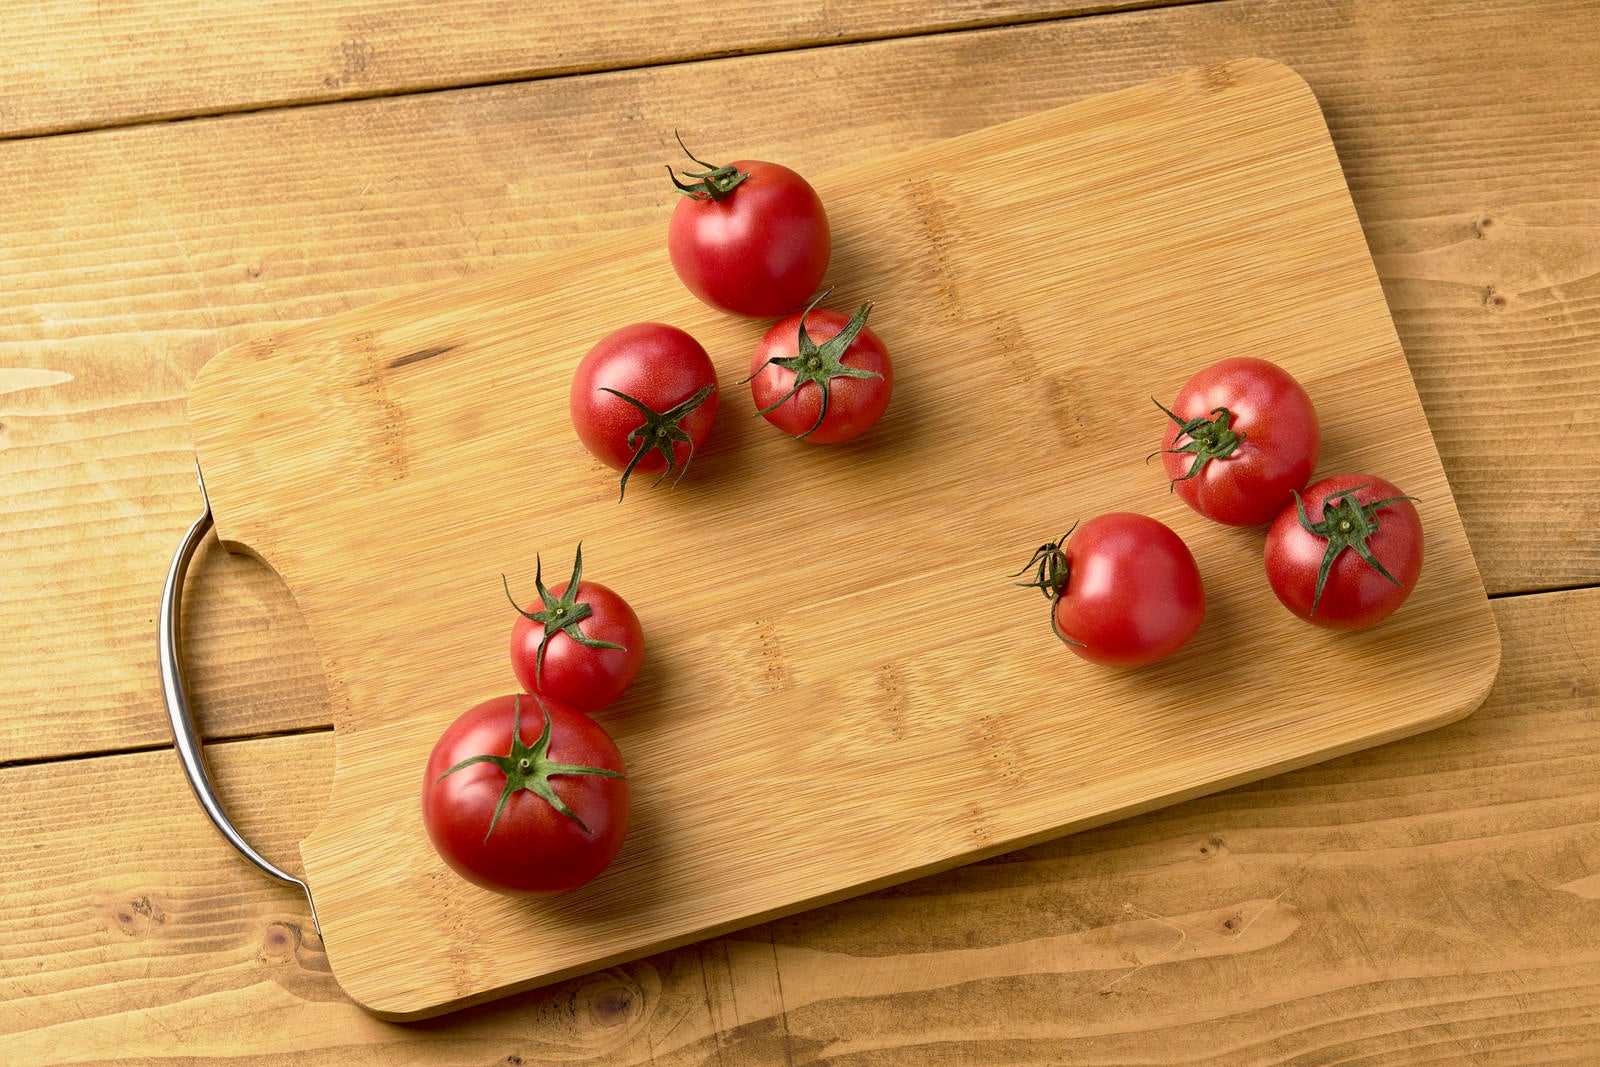 「まな板の上の蔕付きミニトマト」の写真